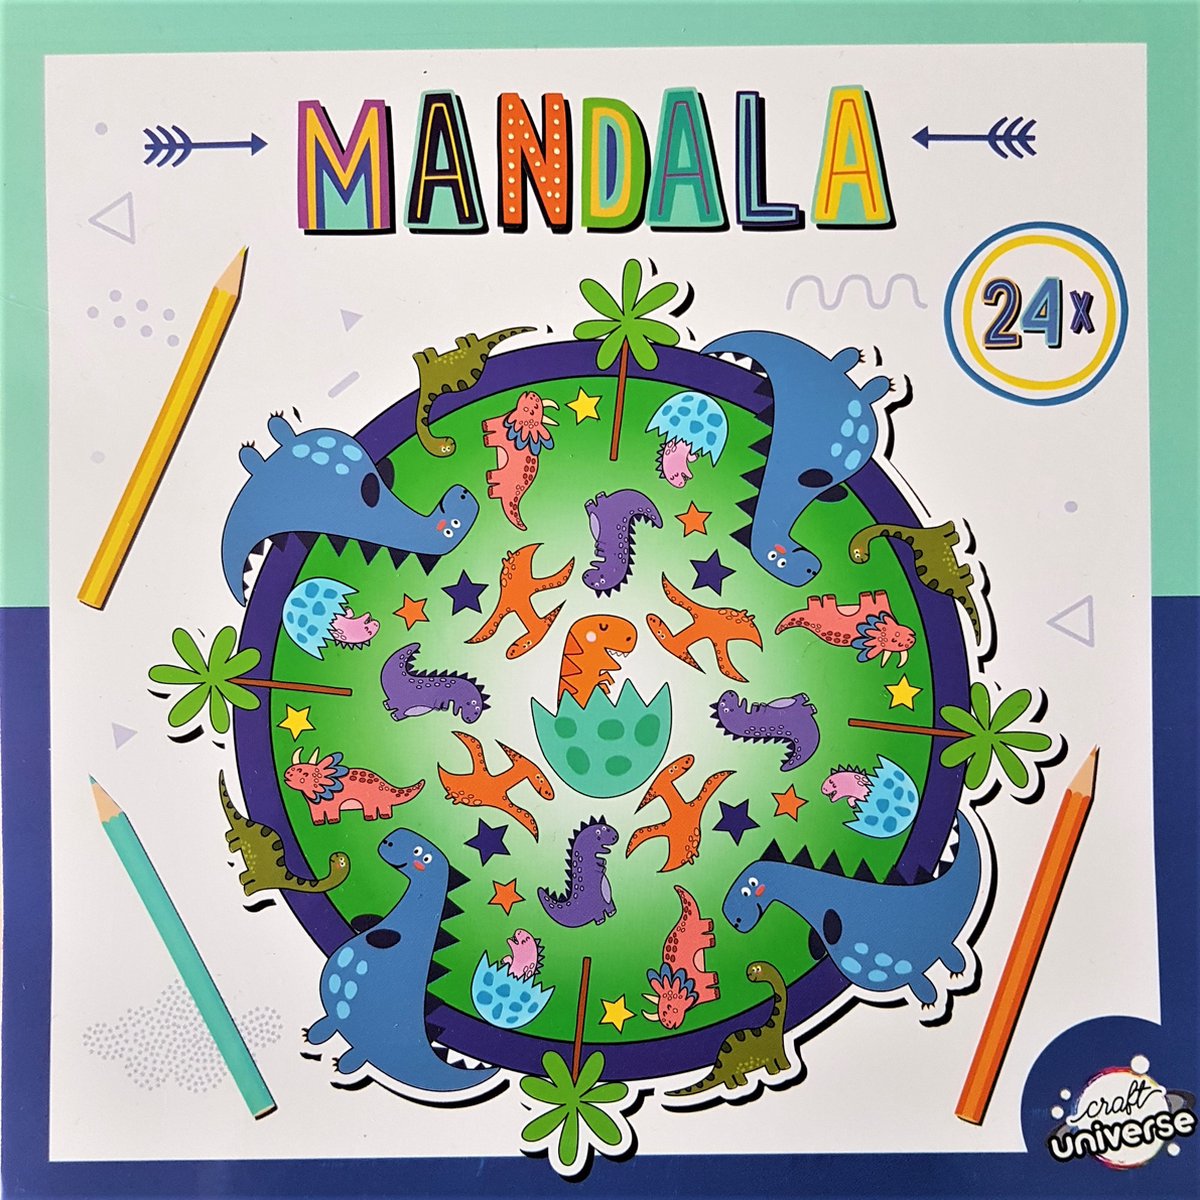 Mandala Kleurboek voor Kinderen Dinosaurussen.